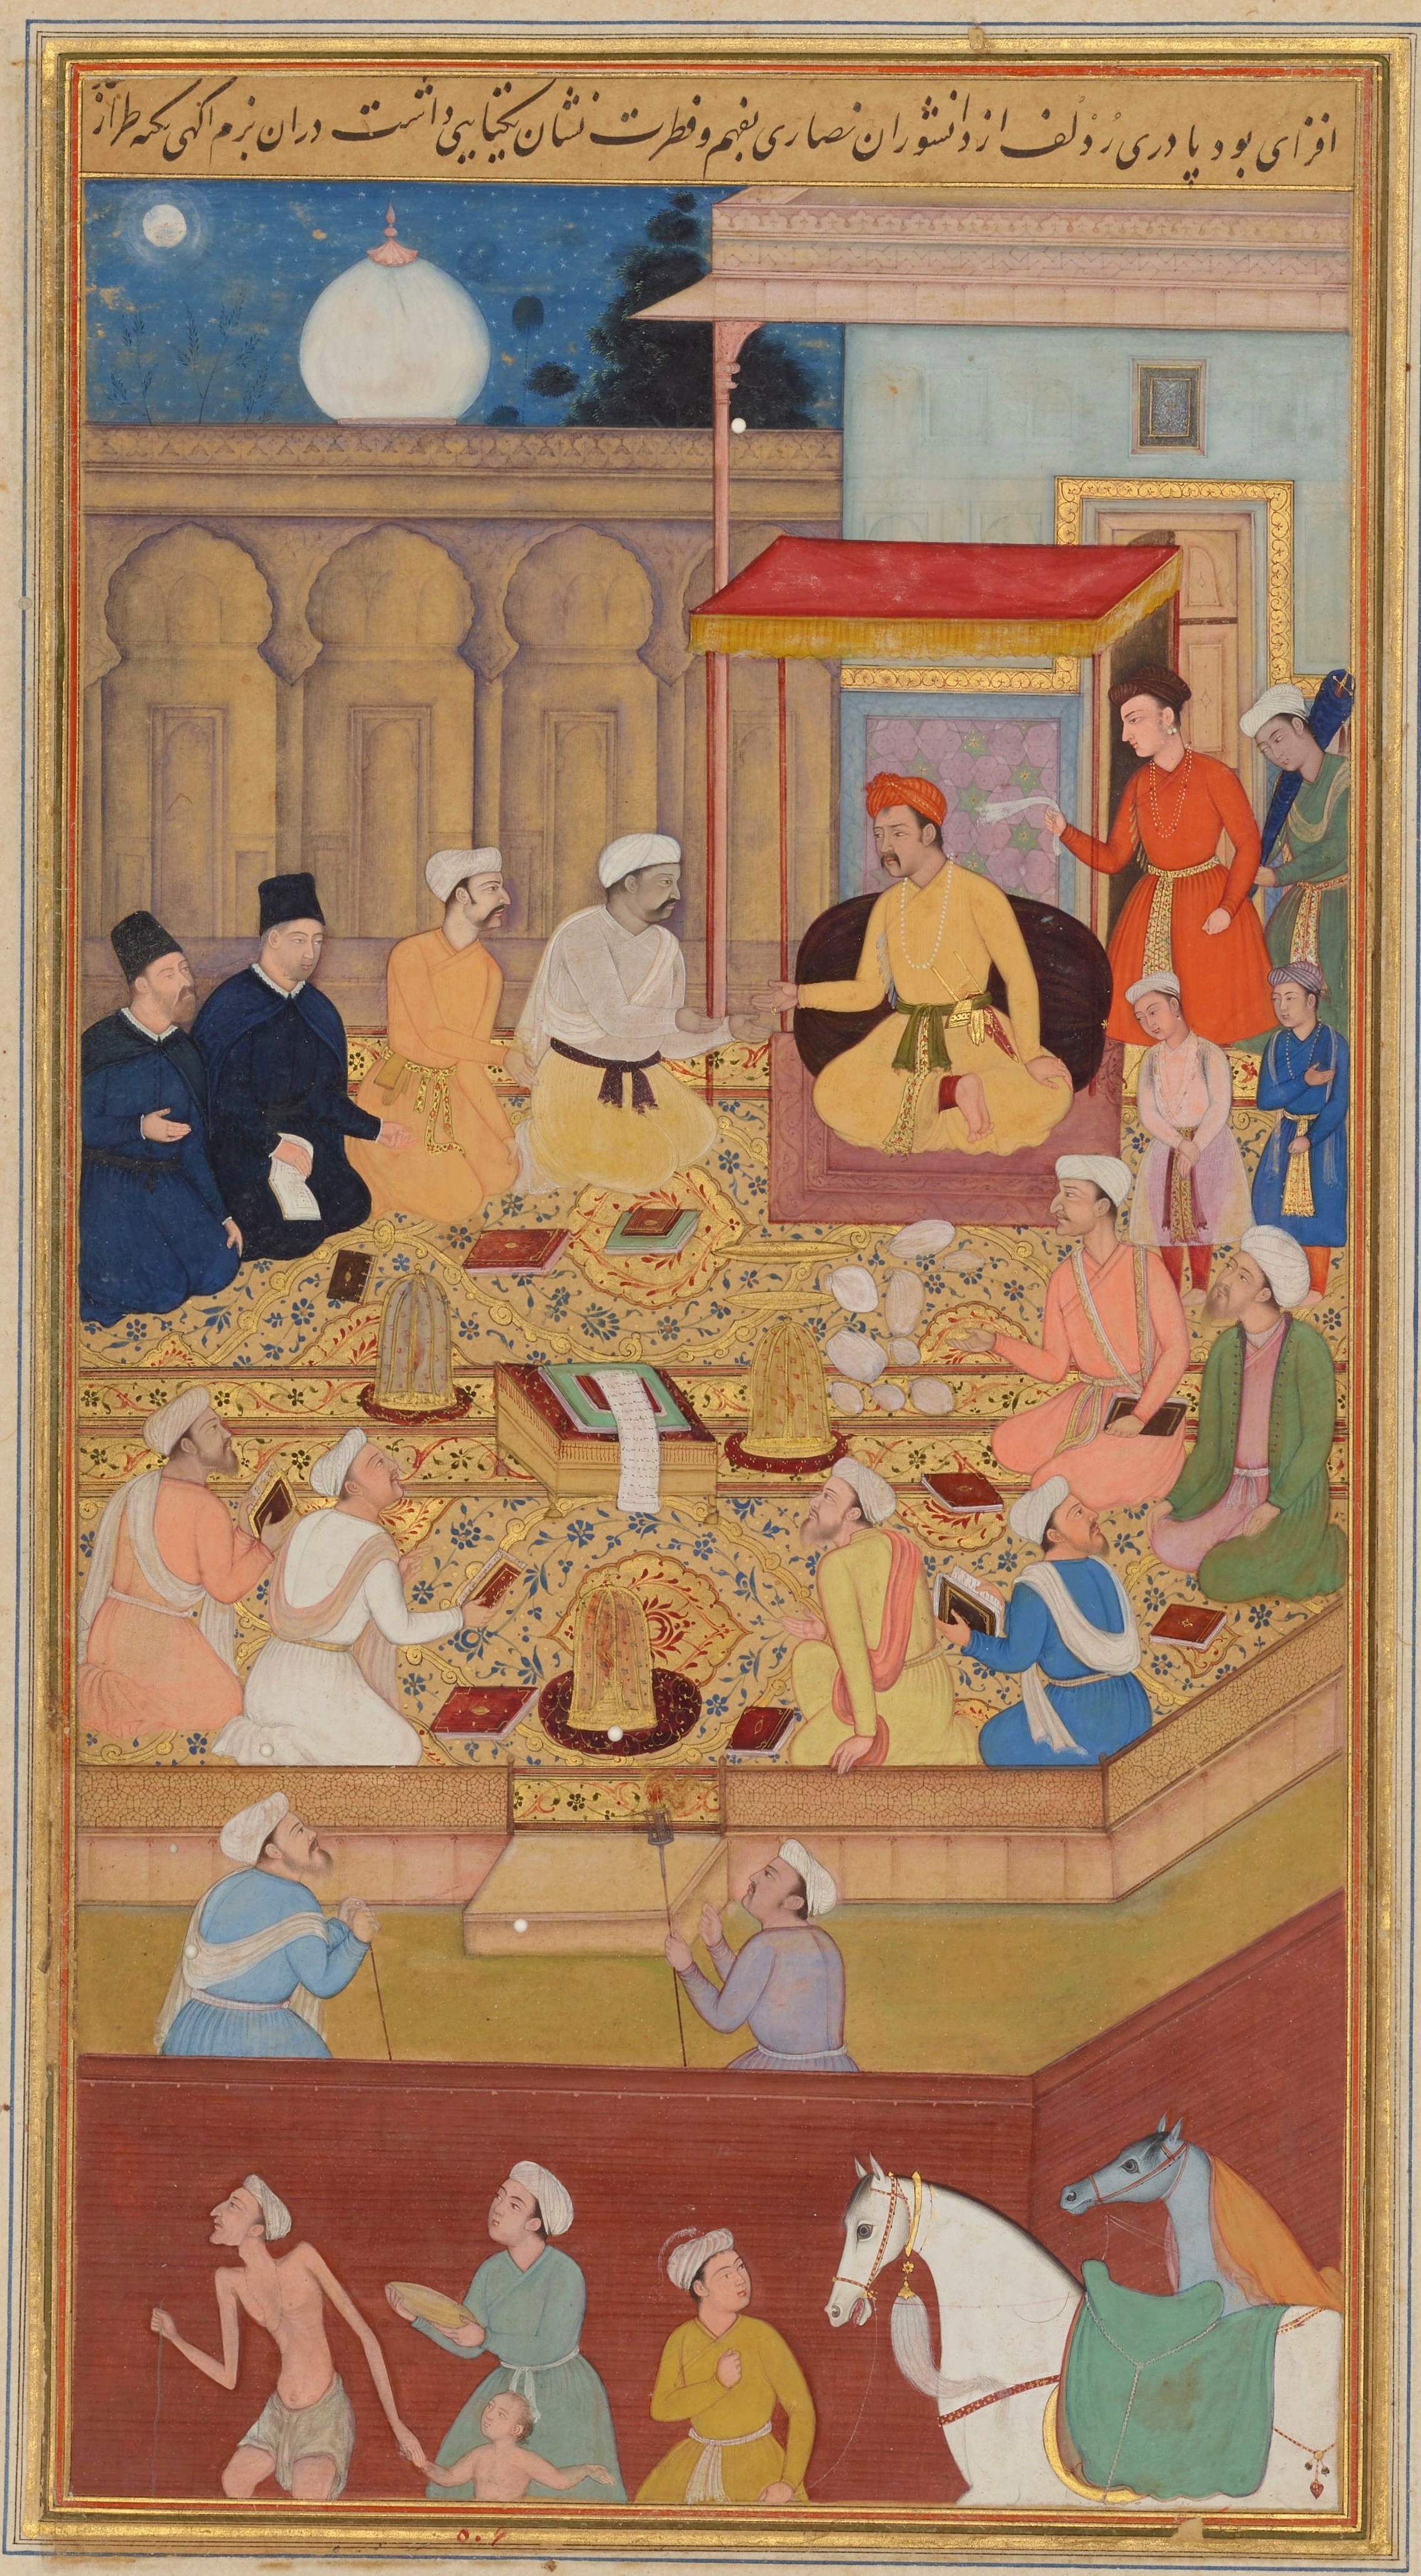 アクバル帝の宮廷に招かれたイエズス会士 by Nar Singh - 1603 - 1605年 